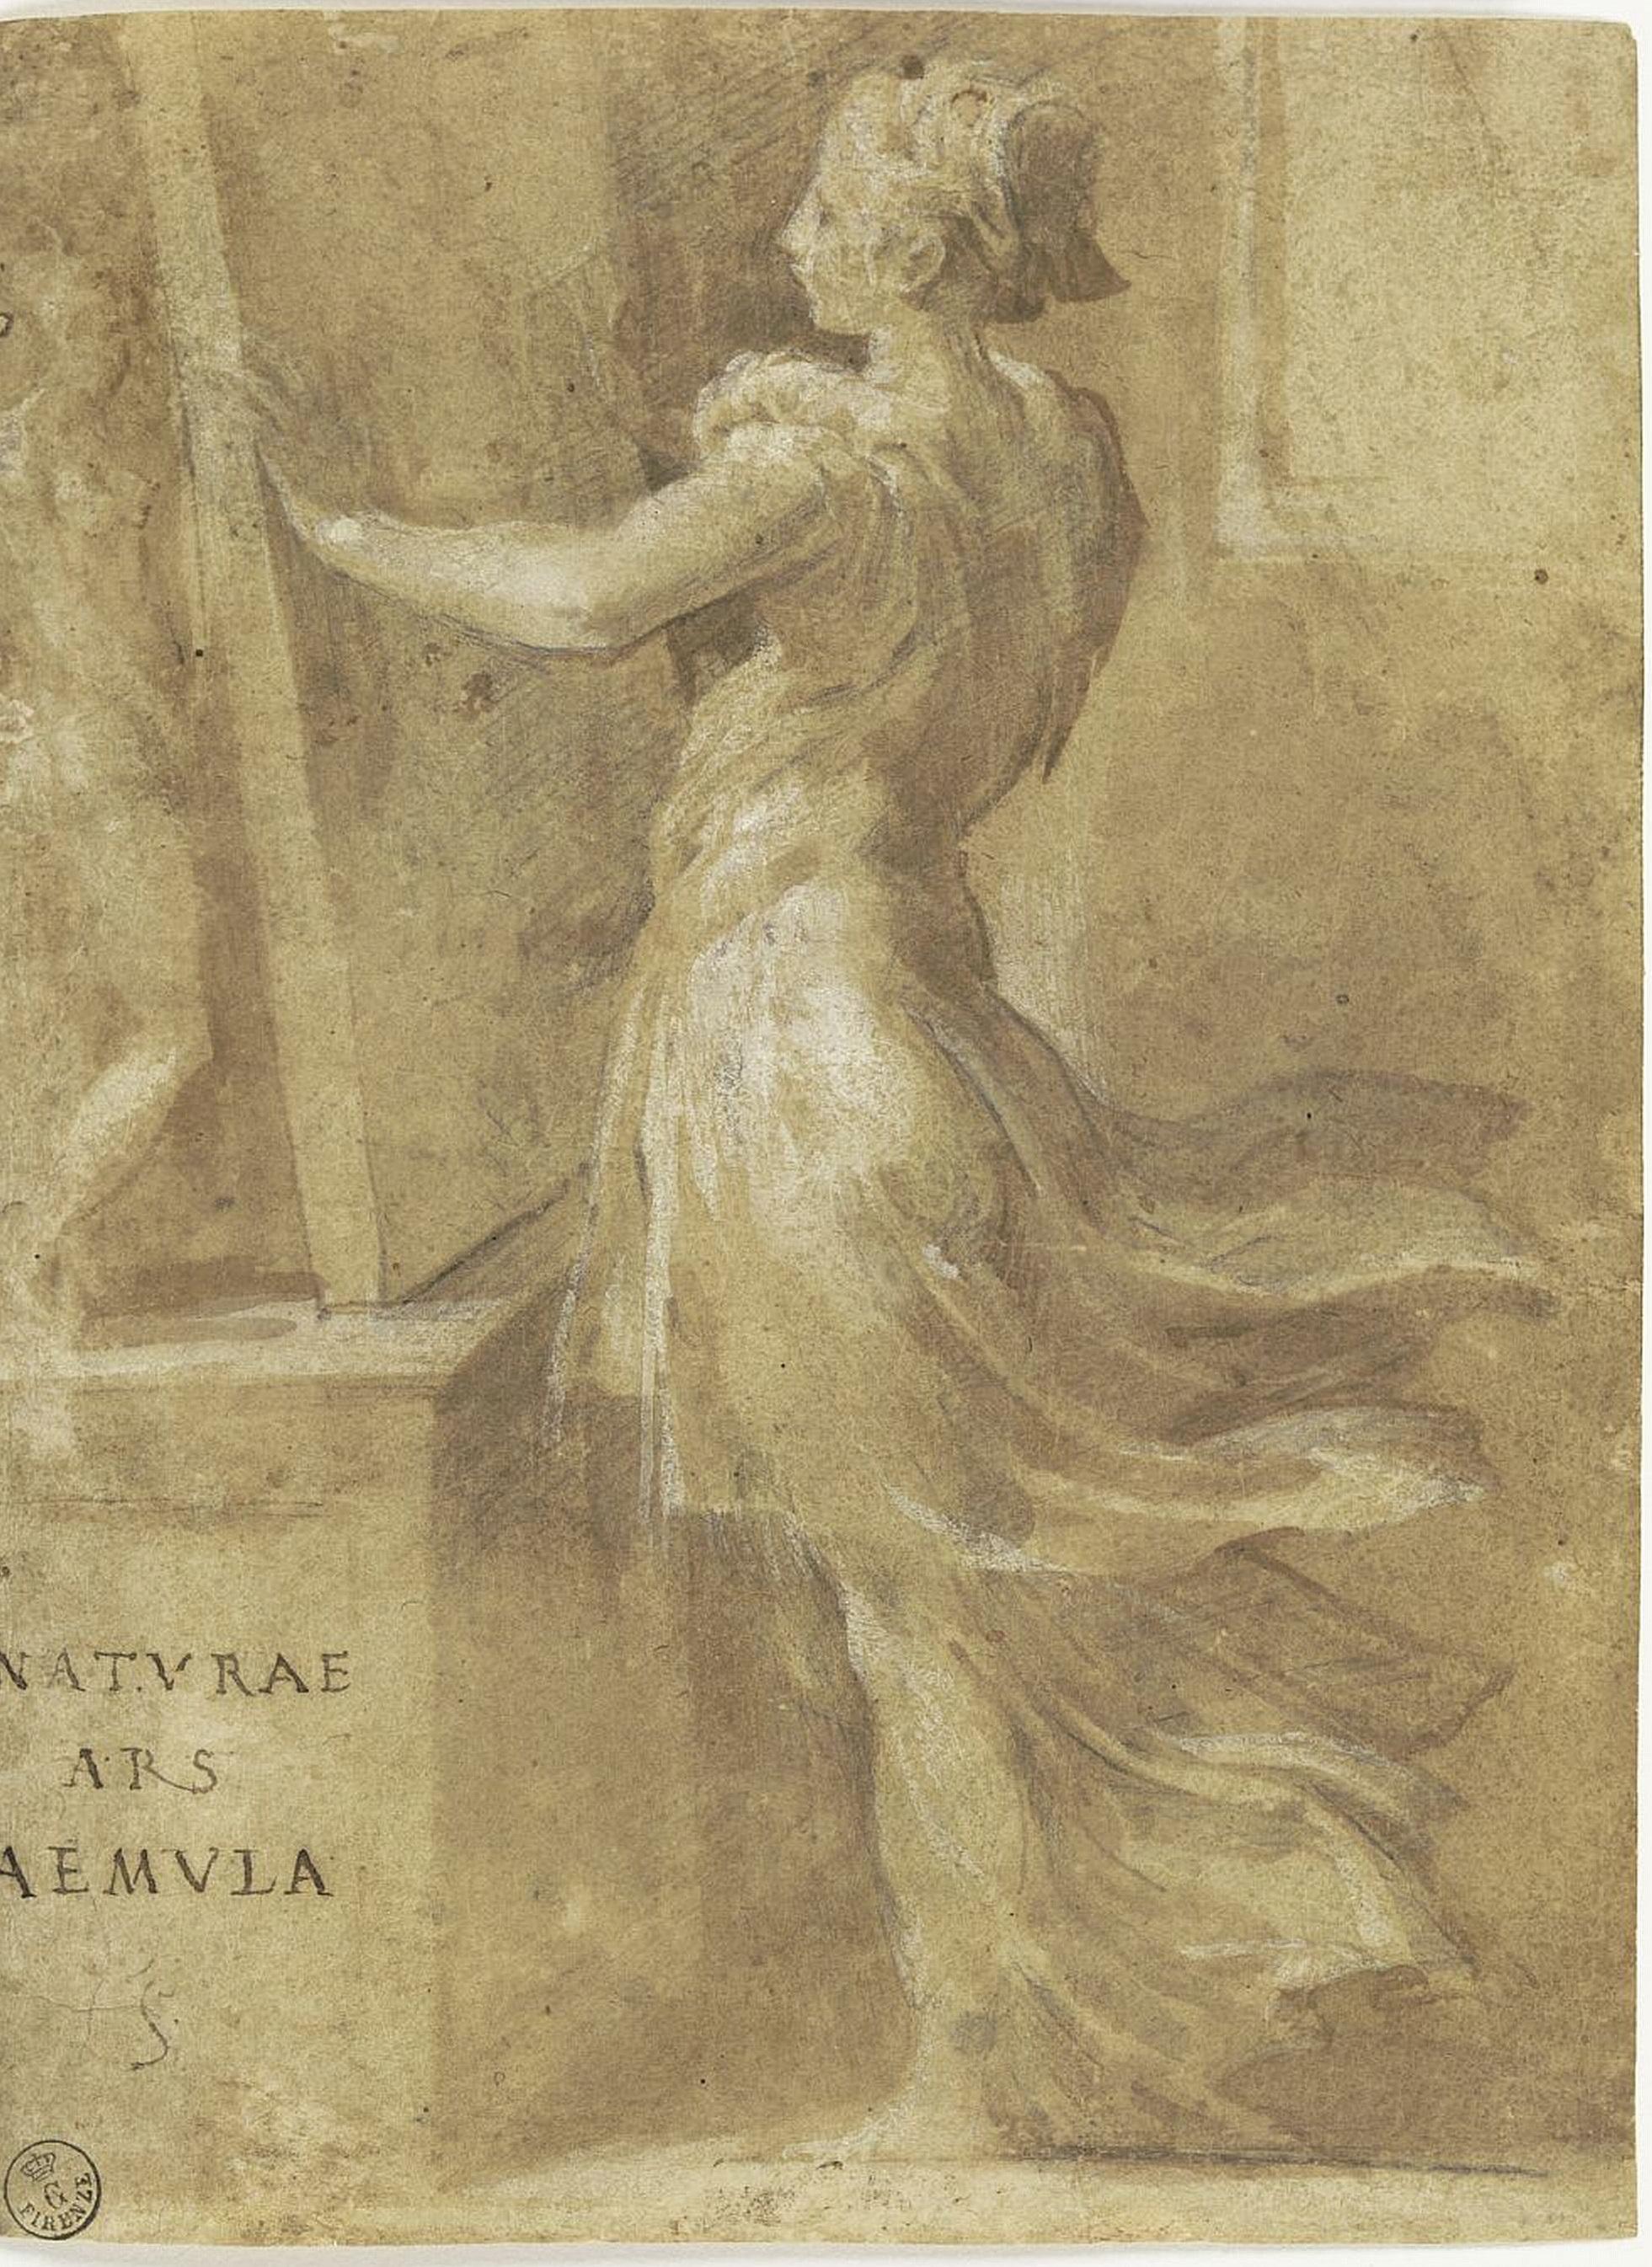 Parmigianino, Naturae Ars Aemula Firenze, Gabinetto Disegni e Stampe degli Uffizi, inv. 1989 F